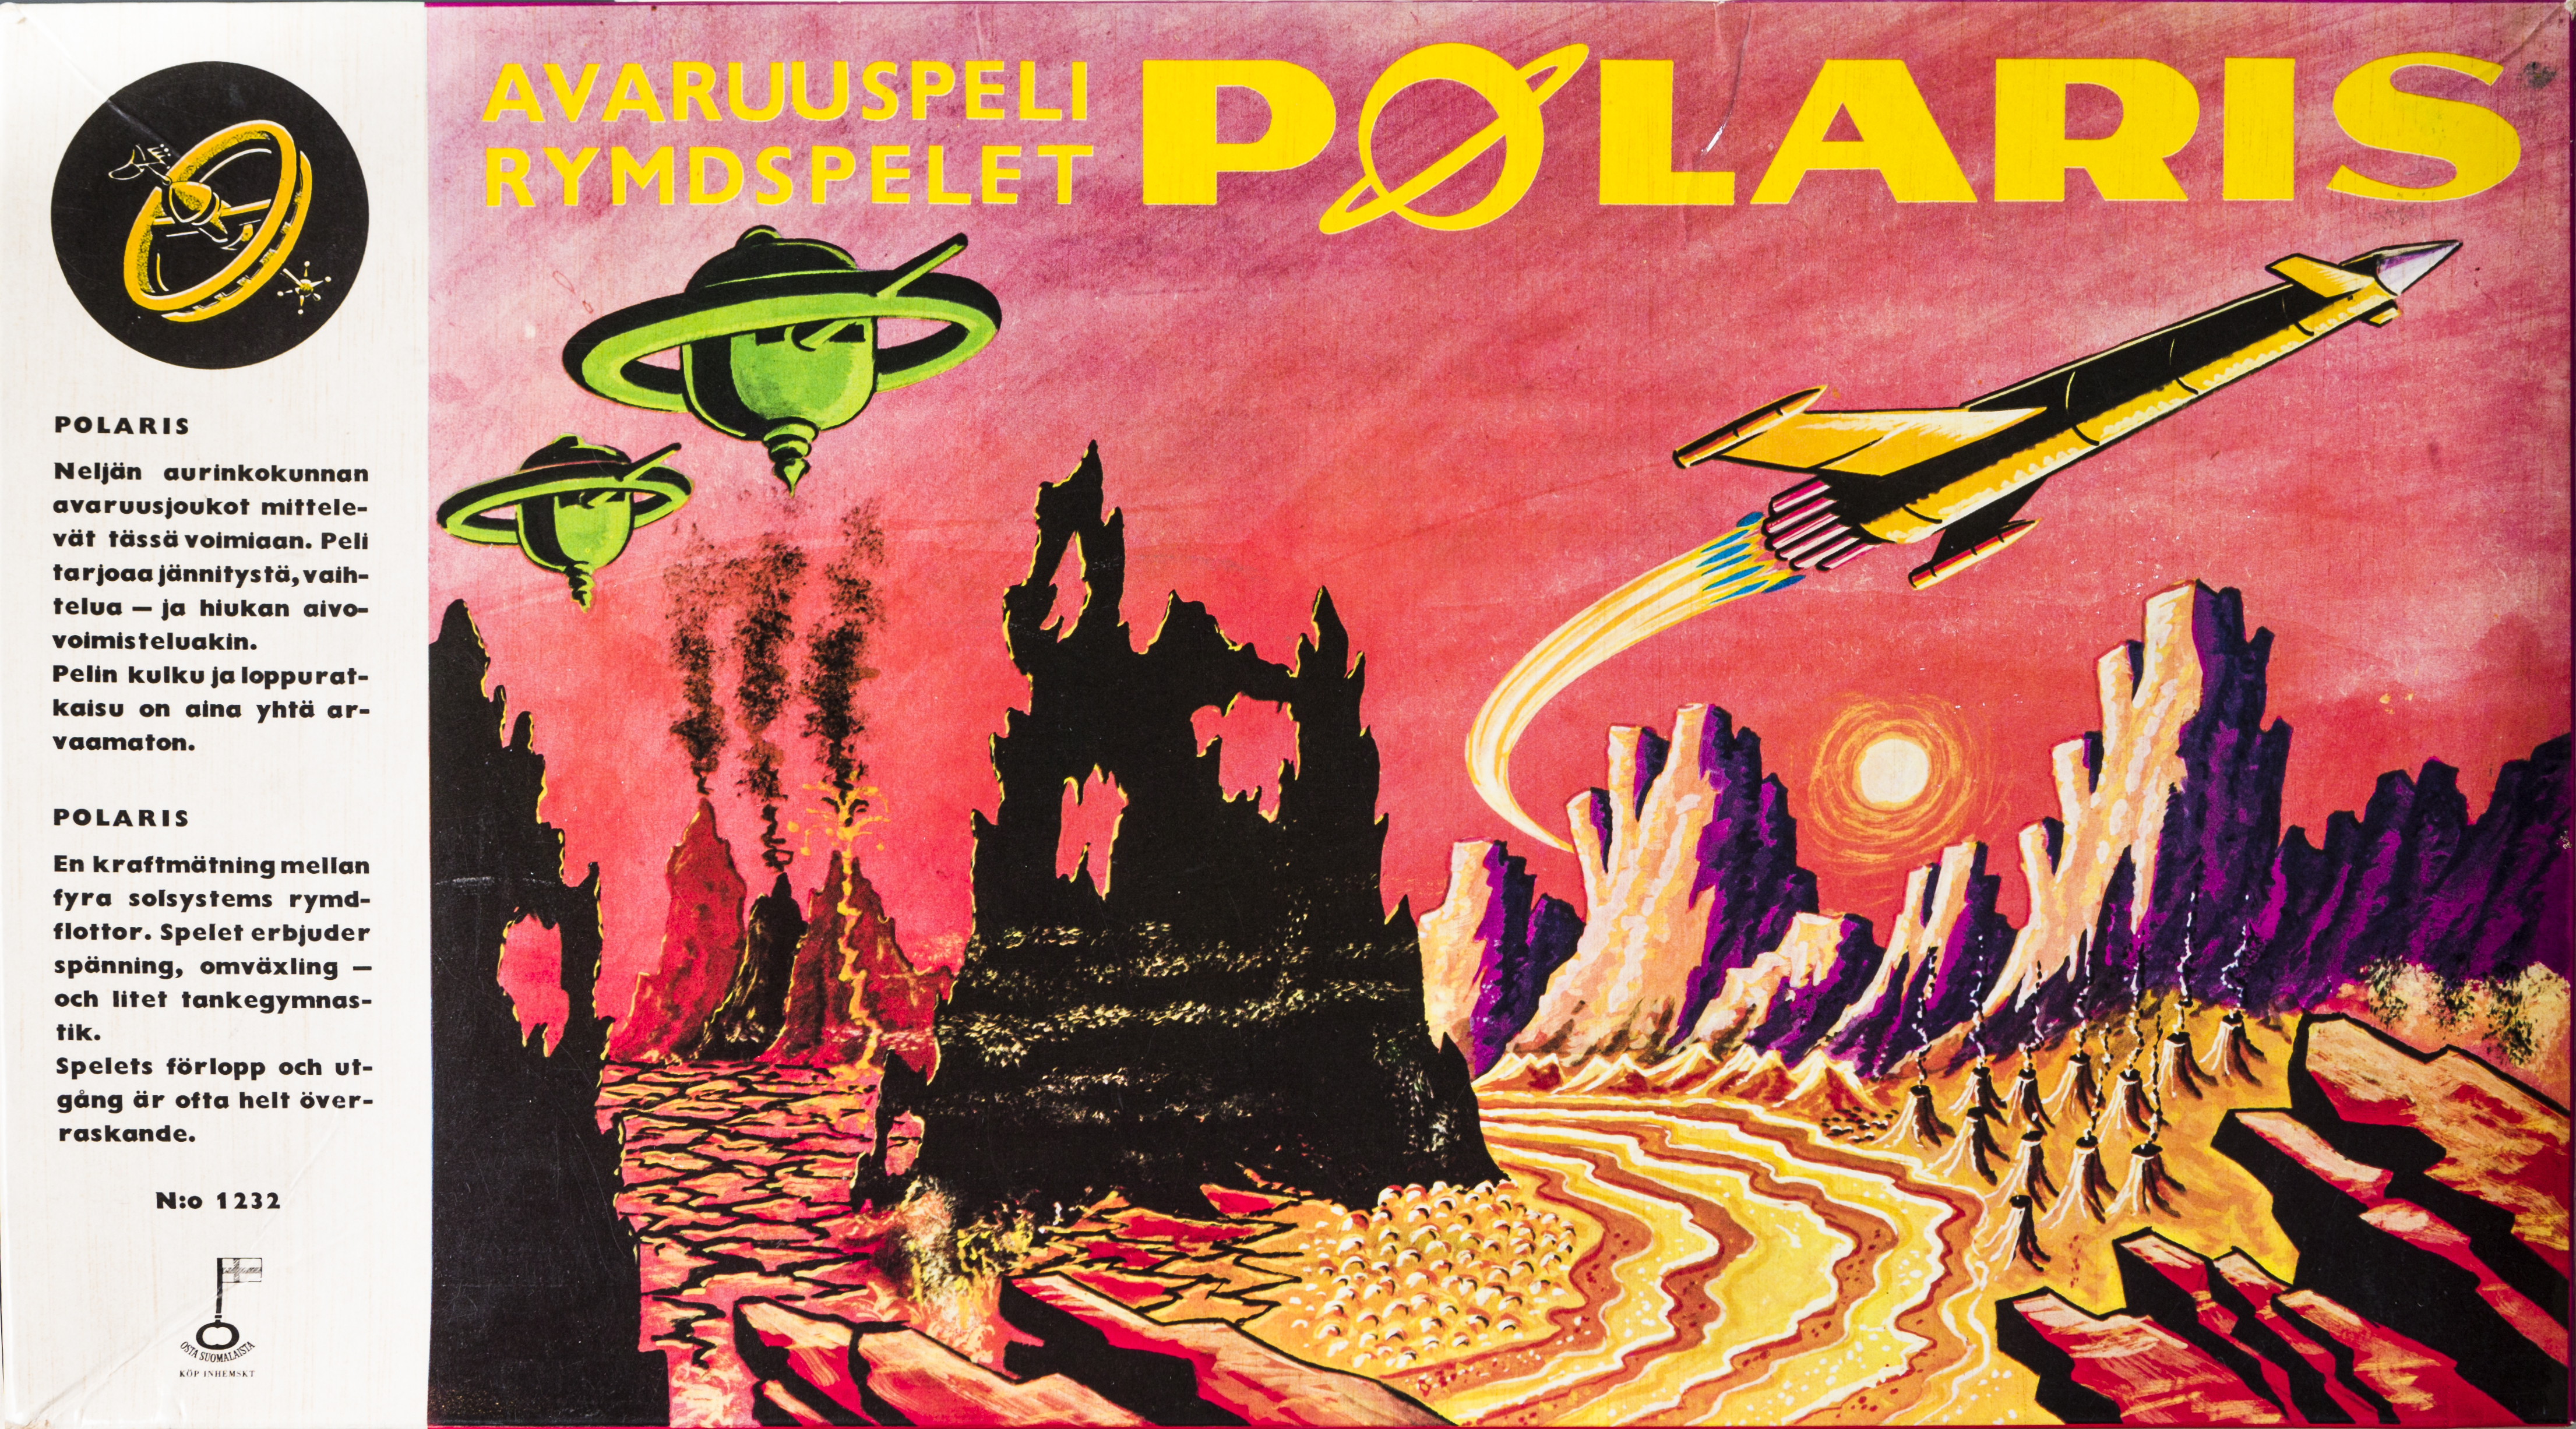 Avaruuspeli Polaris (julkaistu n. 1950–1970) on hyvä esimerkki suurille ikäluokille suunnatusta lautapelistä. Ennen toista maailmansotaa julkaistut pelit käsittelivät yleensä sotaa, mutta 50-luvun alusta alkaen pelit tehtiin ensisijaisesti lapsille. Samalla sotateema jäi marginaaliin.